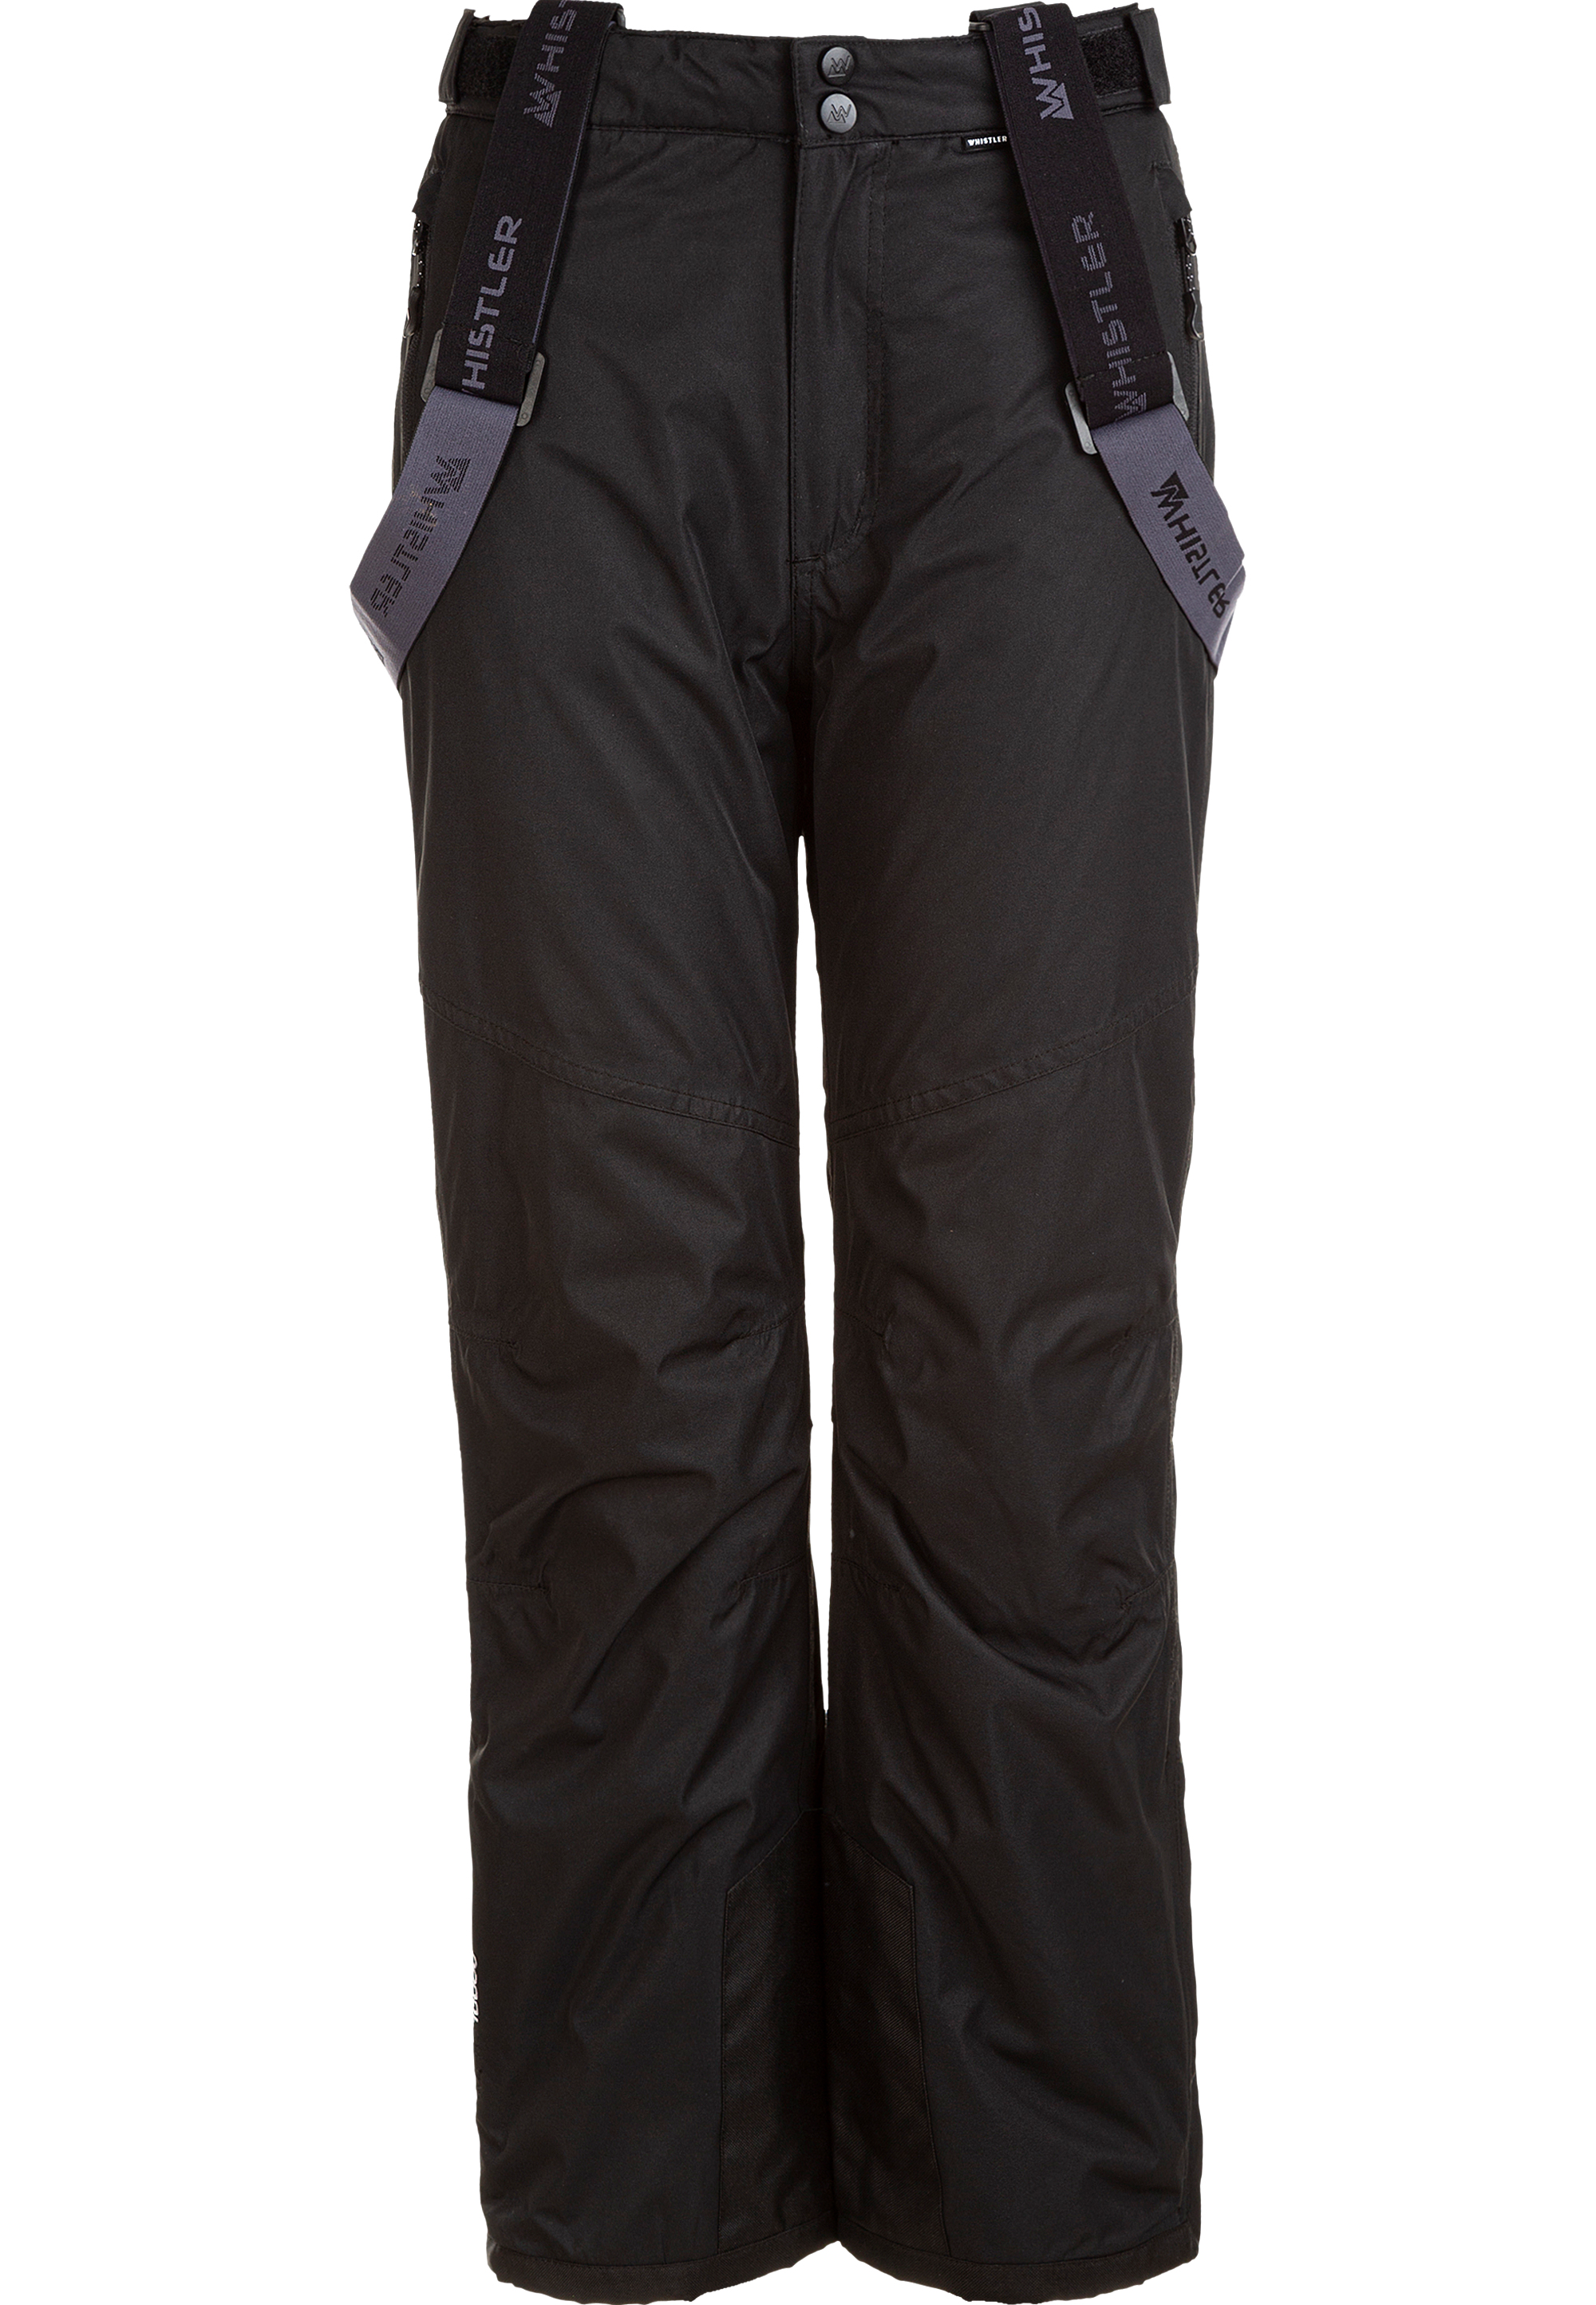 Лыжные штаны Whistler Skihose Fairfax, цвет 1001 Black лыжные штаны whistler fairway jr цвет orange